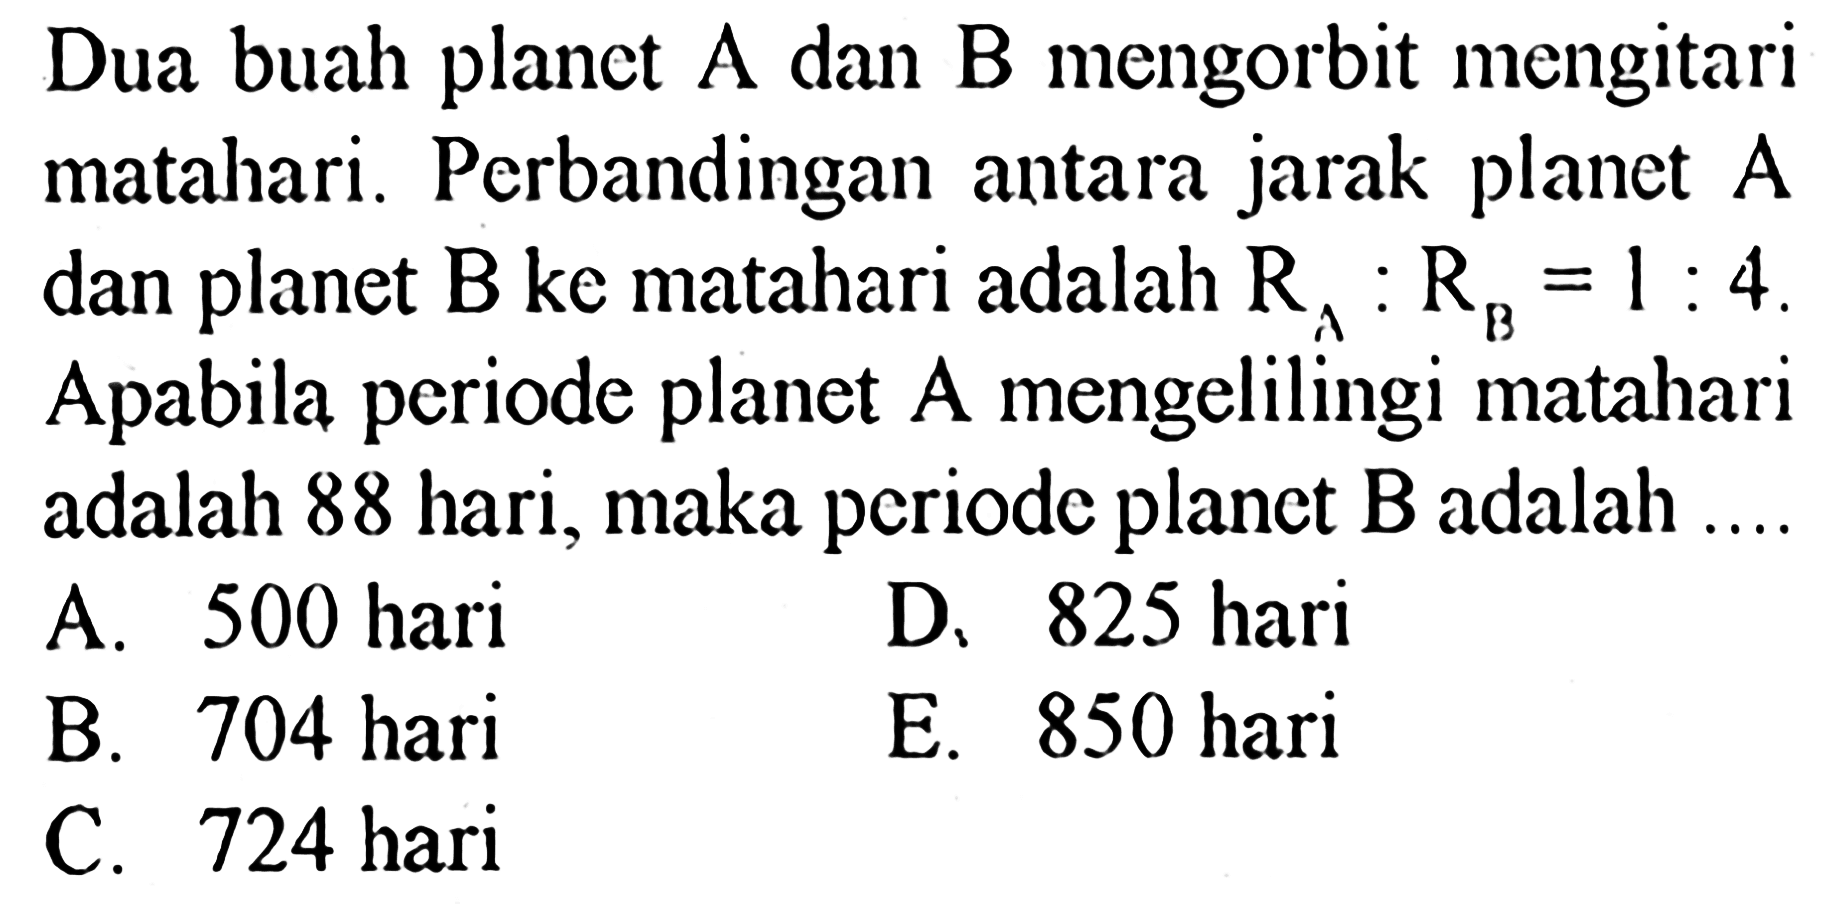 Dua buah planet A dan B mengorbit mengitari matahari. Perbandingan antara jarak planet A dan planet B ke matahari adalah RA:RB=1:4. Apabila periode planet A mengelilingi matahari adalah 88 hari, maka periode planet B adalah ....